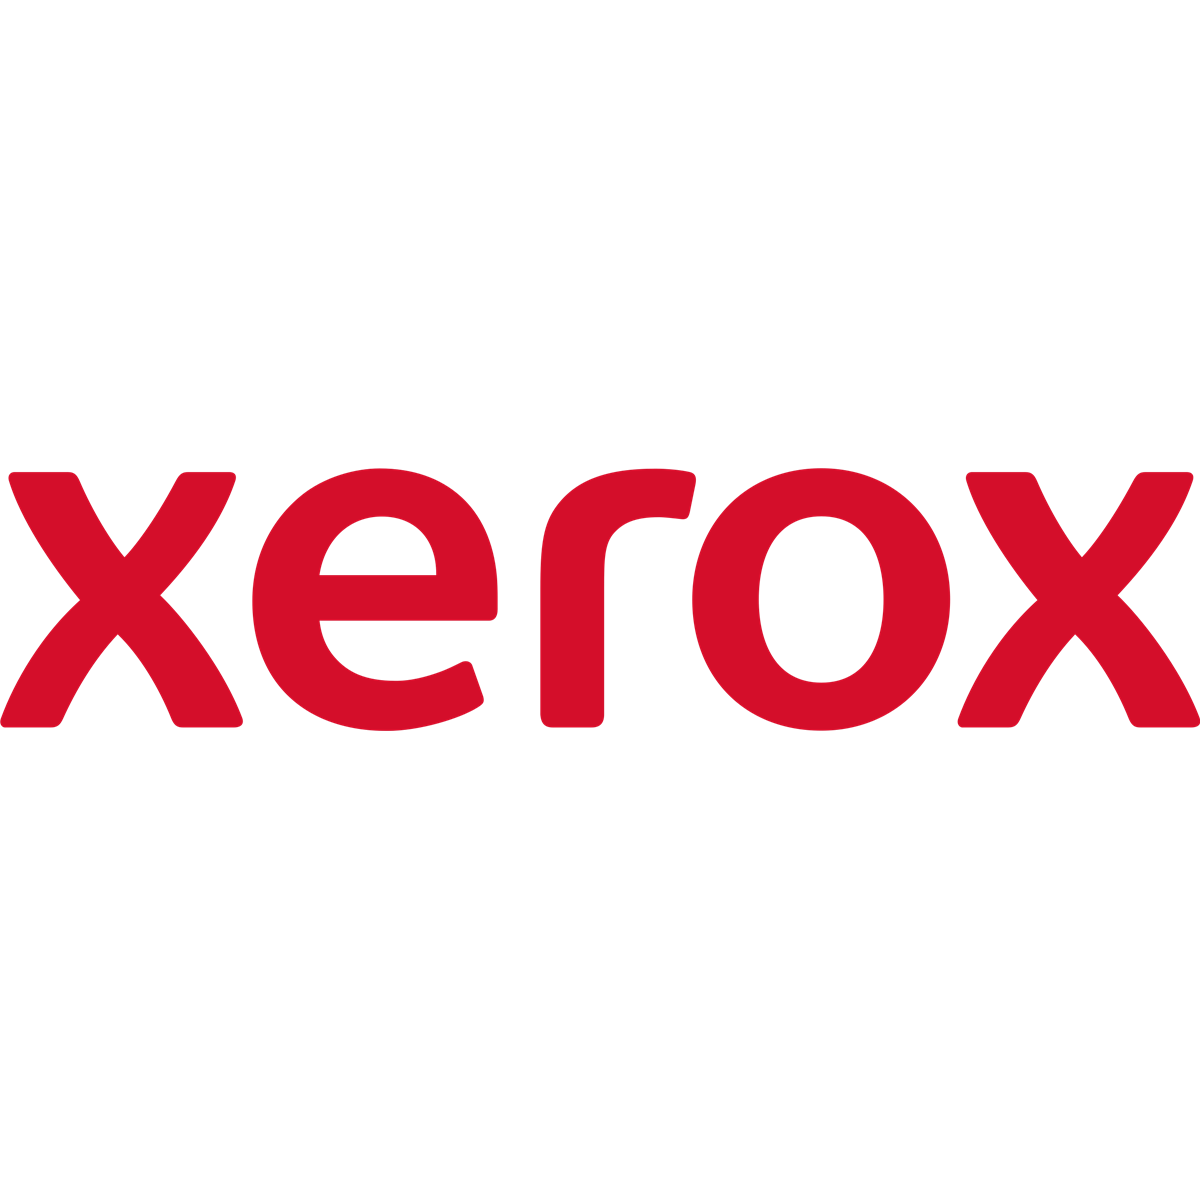 Xerox Stand - China - VersaLink B400 - Phaser 3610 - VersaLink C400 - WorkCentre 3615 - Phaser 6600 - VersaLink B405,... - 469.9